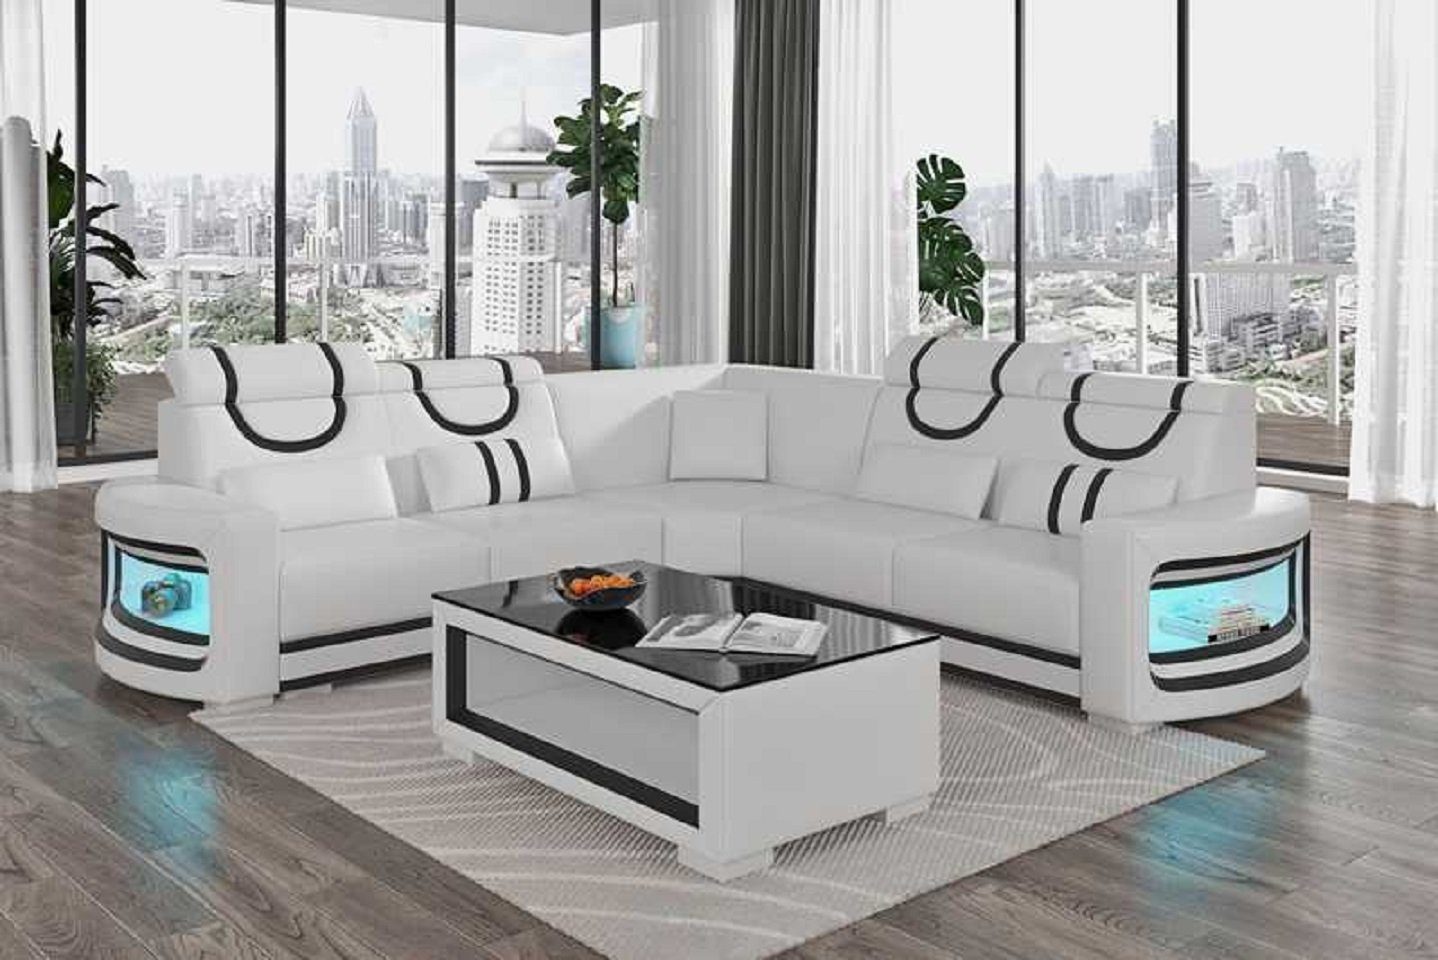 JVmoebel Ecksofa Modern Ecksofa Luxus L Form Couch Sofa Wohnzimmer Design Neu, 3 Teile, Made in Europe Weiß